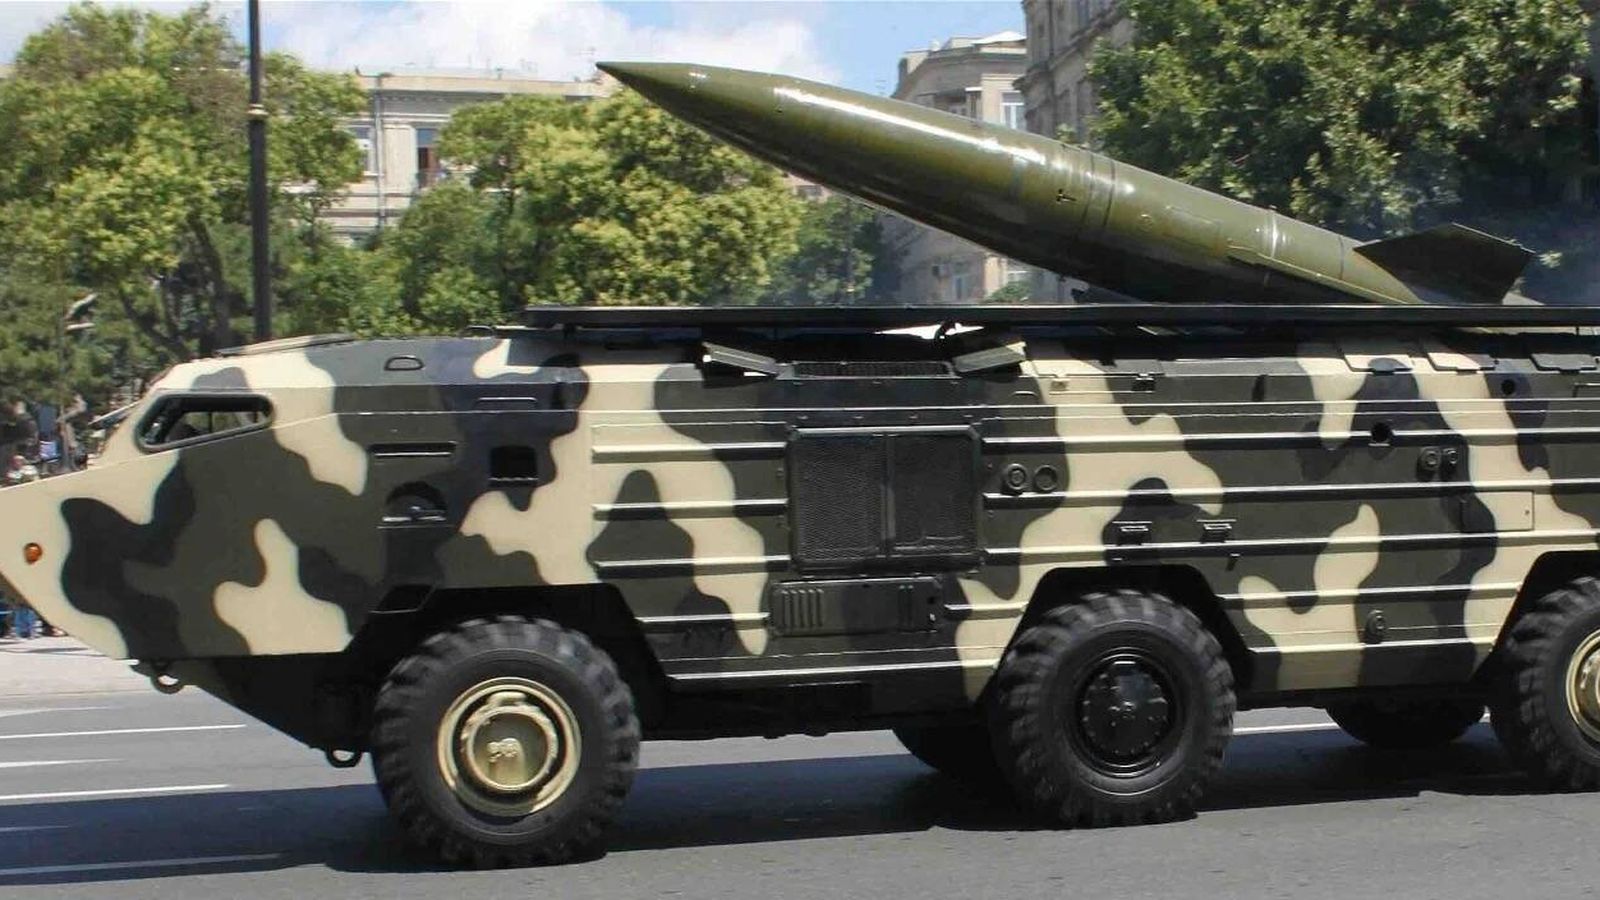 El misil táctico OTR-21 Tochka puede disparar cabezas de 100 kilotones a una distancia de 185 kilómetros. (Gulustan/CC 3.0)